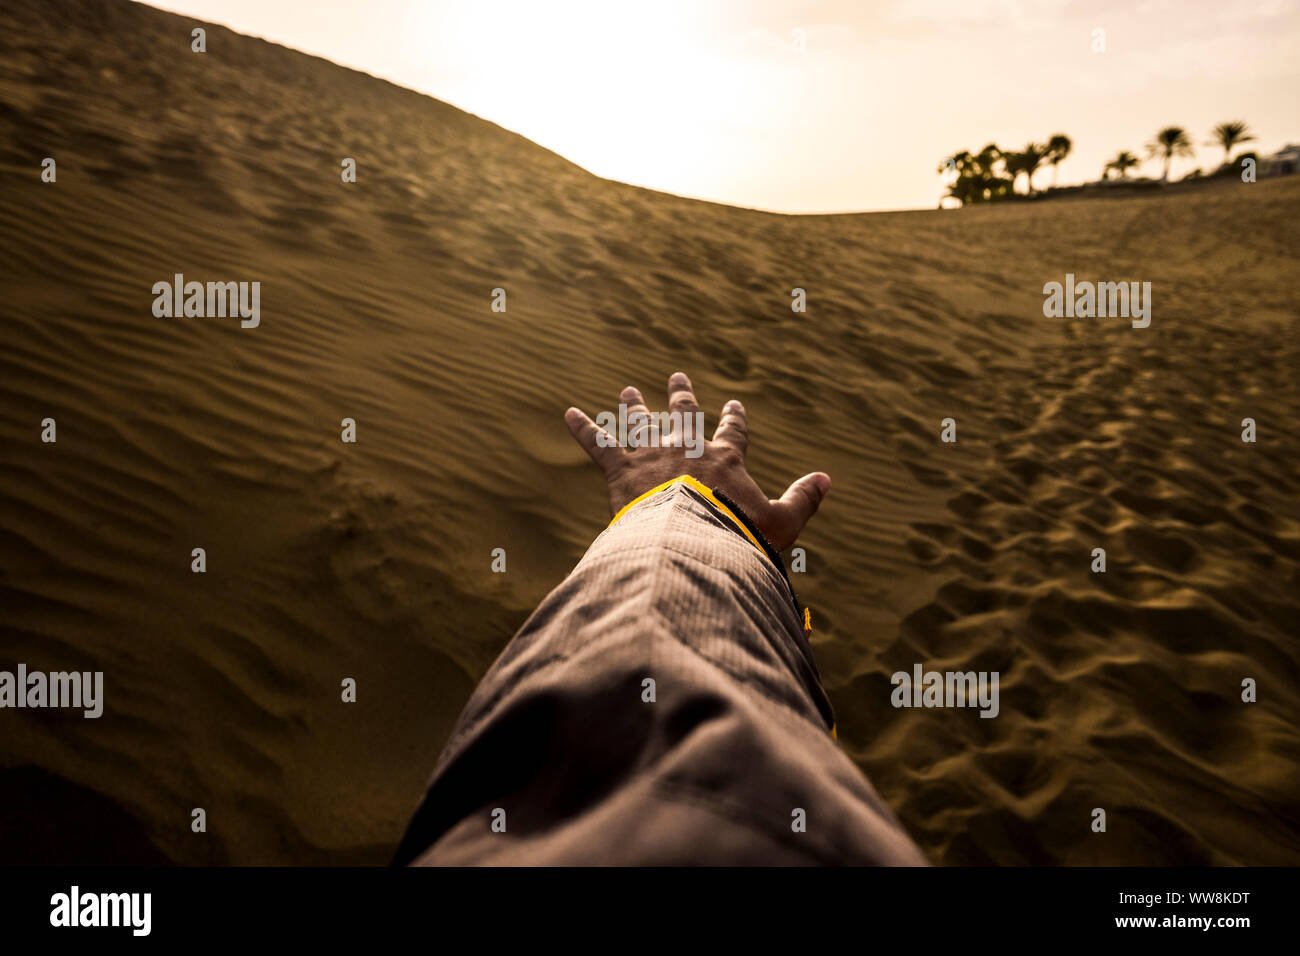 Hand und männlichen Arm bereit zu berühren und den Horizont in der dürren Wüste, ohne Wasser. oeasis im Hintergrund. Dünen und Sand und Footprint von Menschen auf dem Boden. Licht und Schatten und Konzept für einsame Mann erkunden Stockfoto